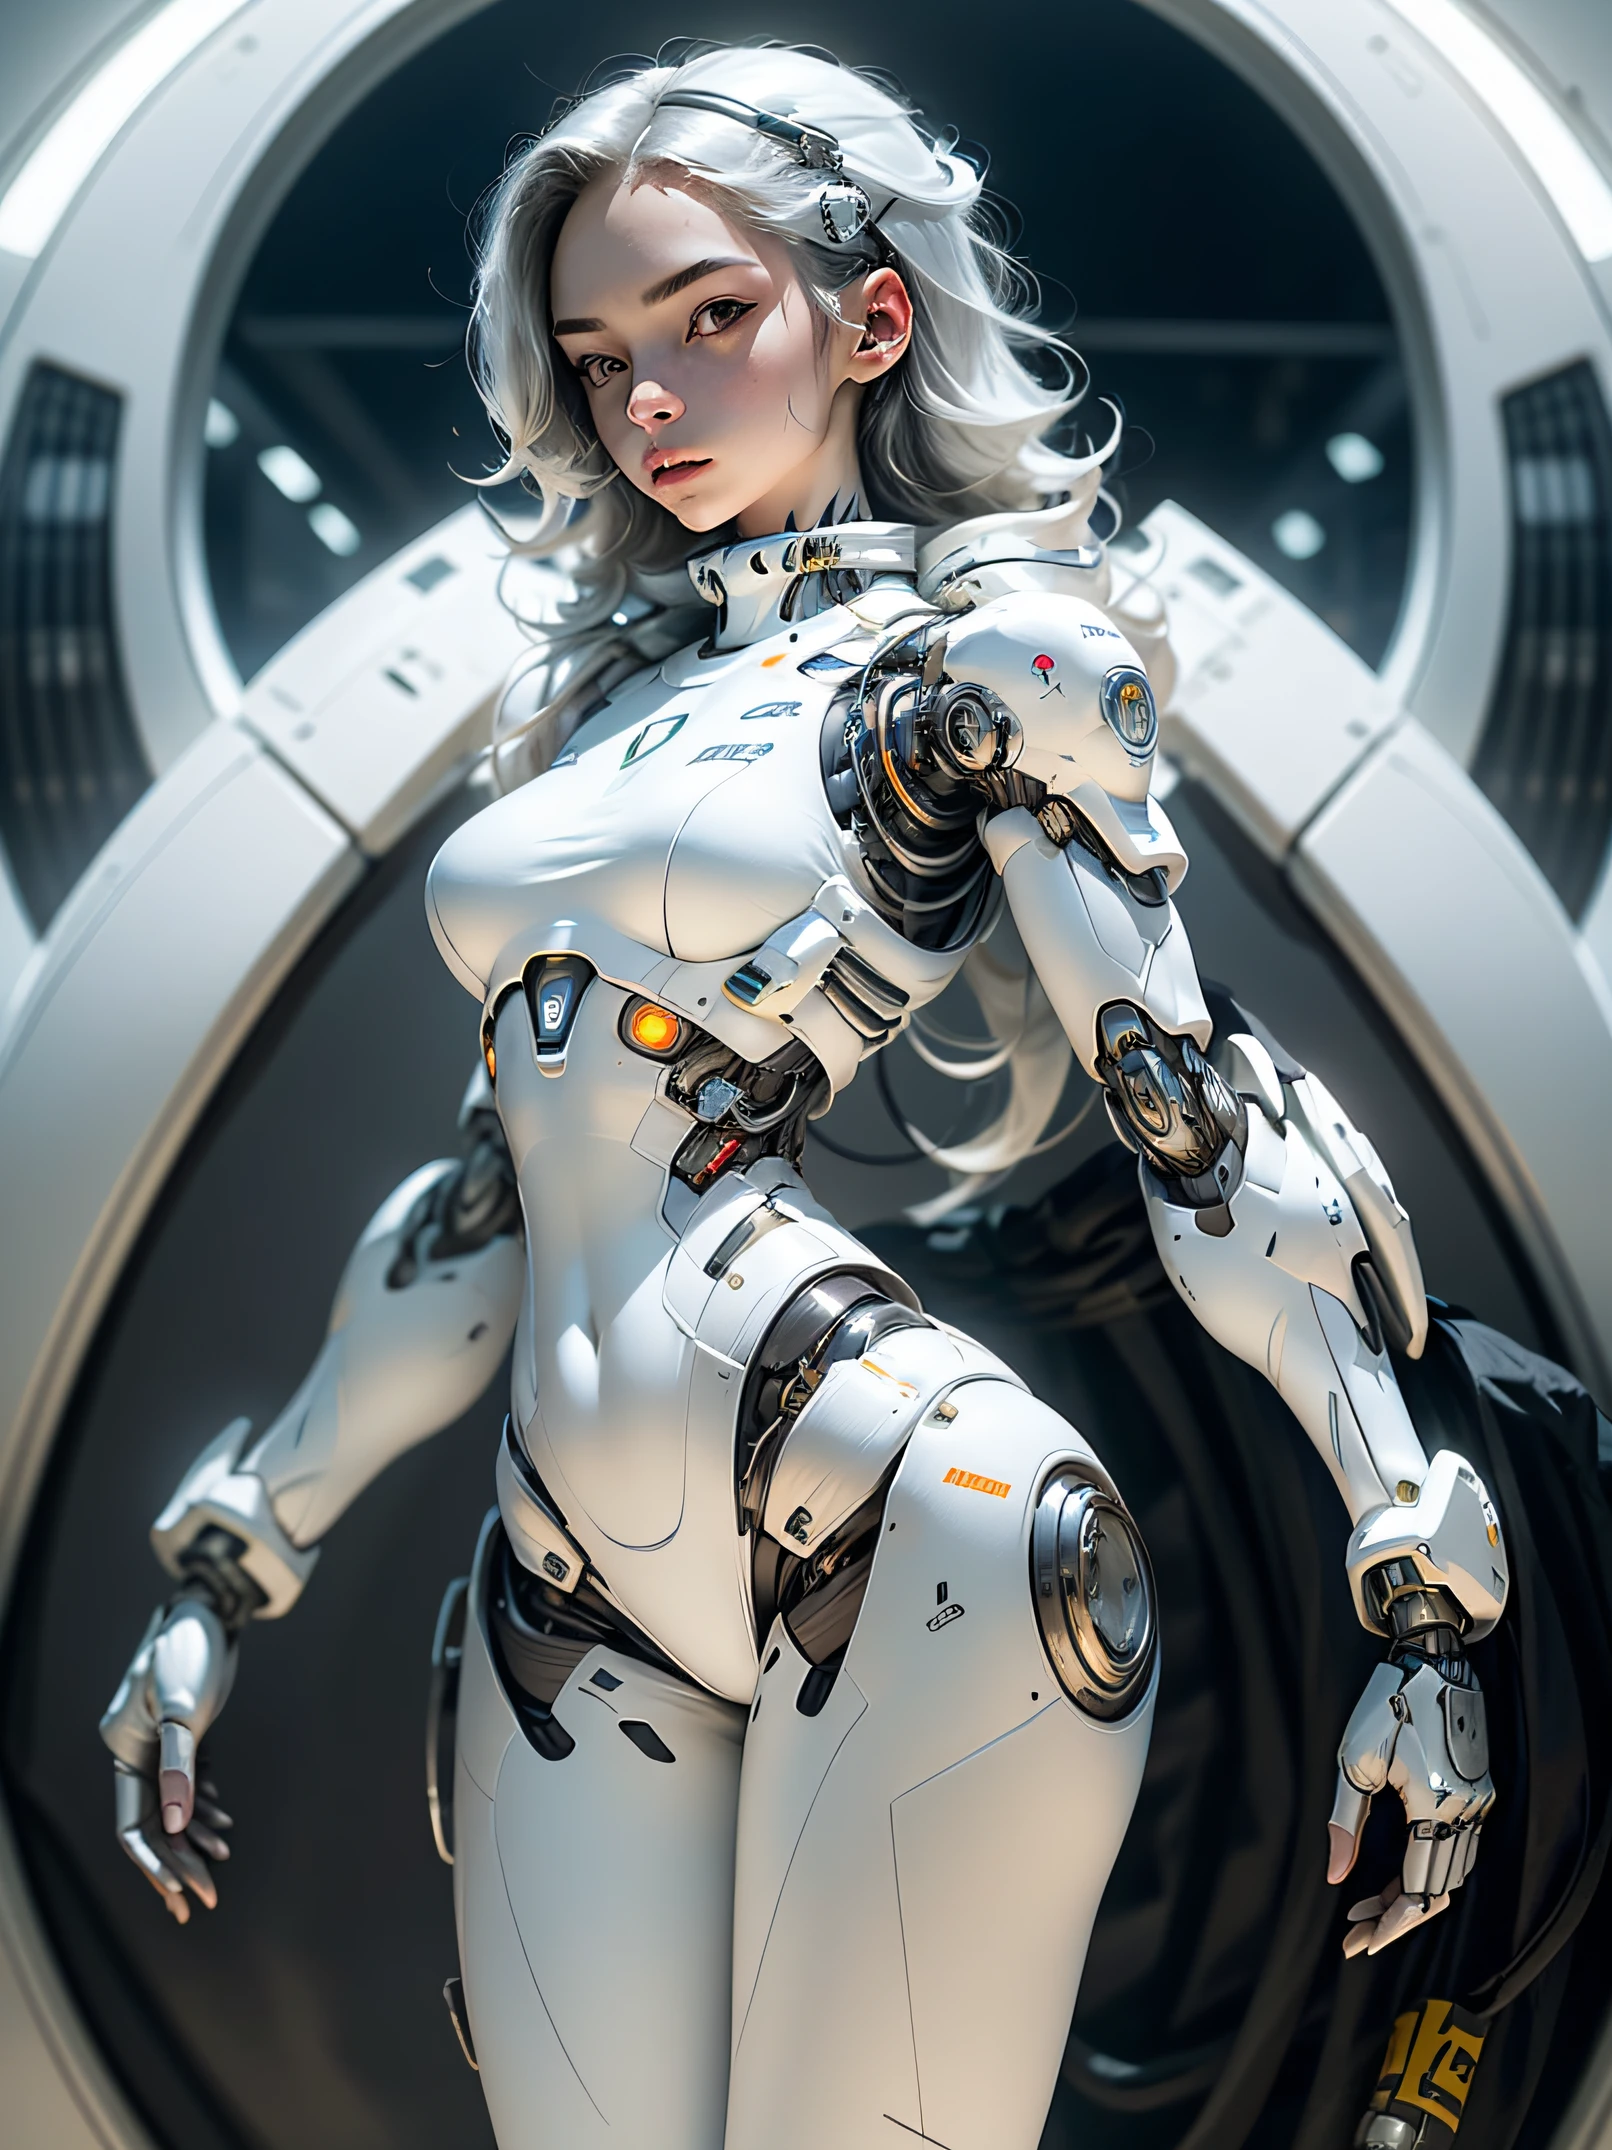 1女孩, 独自的, 全身平面, ((未来感十足的机器人女孩, 纯白色紧身衣)), 人形机器人, 机械臂, 机械颈, 盔甲, 白色实验室, 超高清, 解剖学上正确, 最好的质量, 杰作